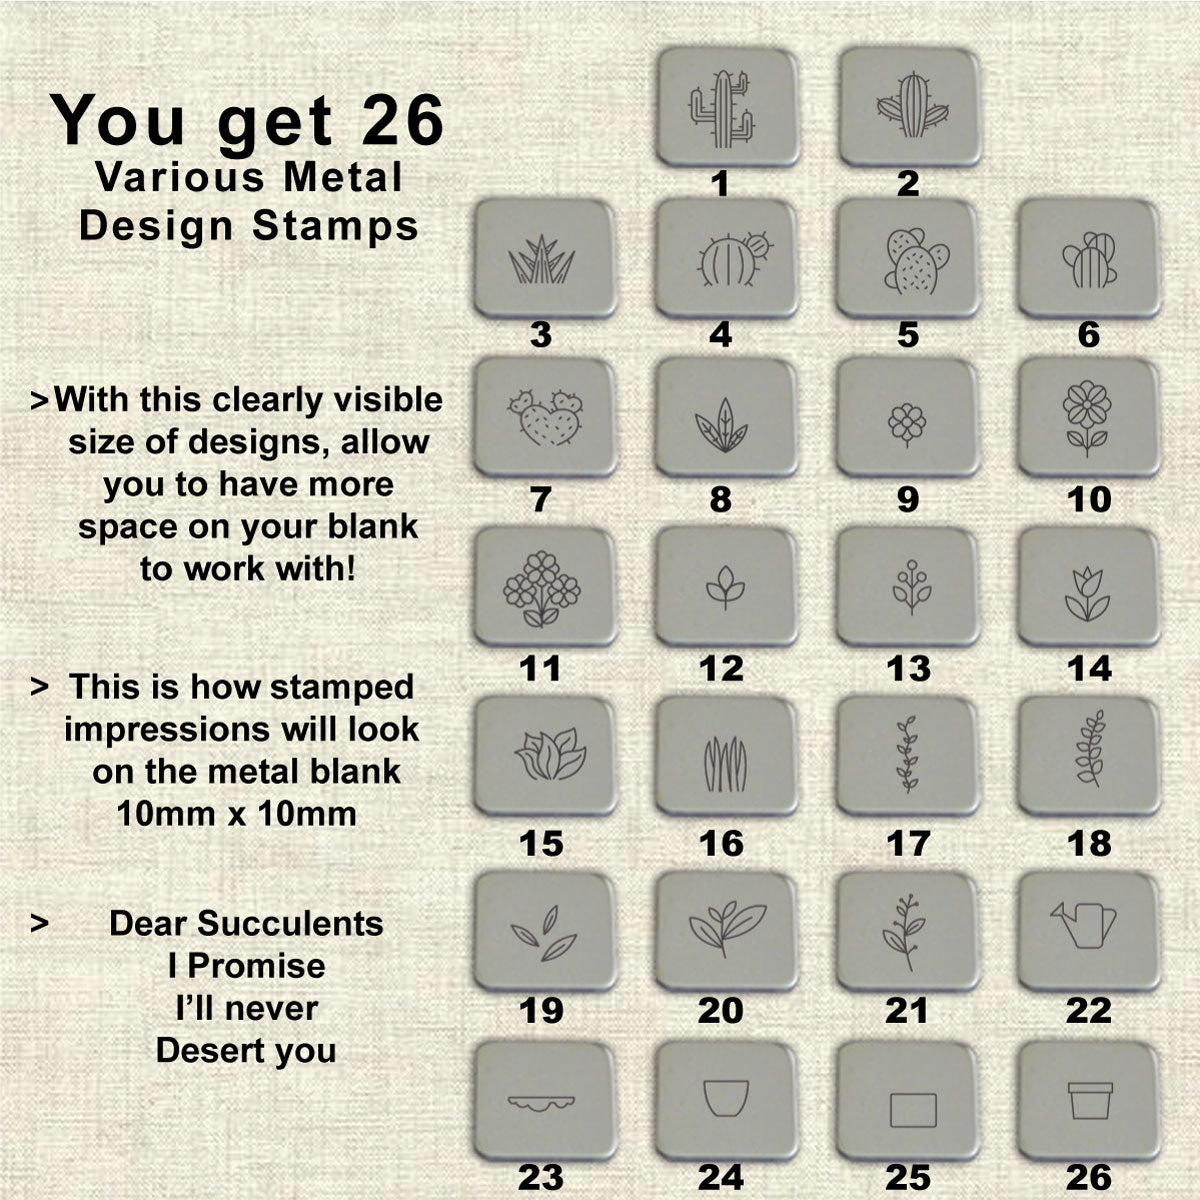 26 PLANTS Design stamps, Part 1